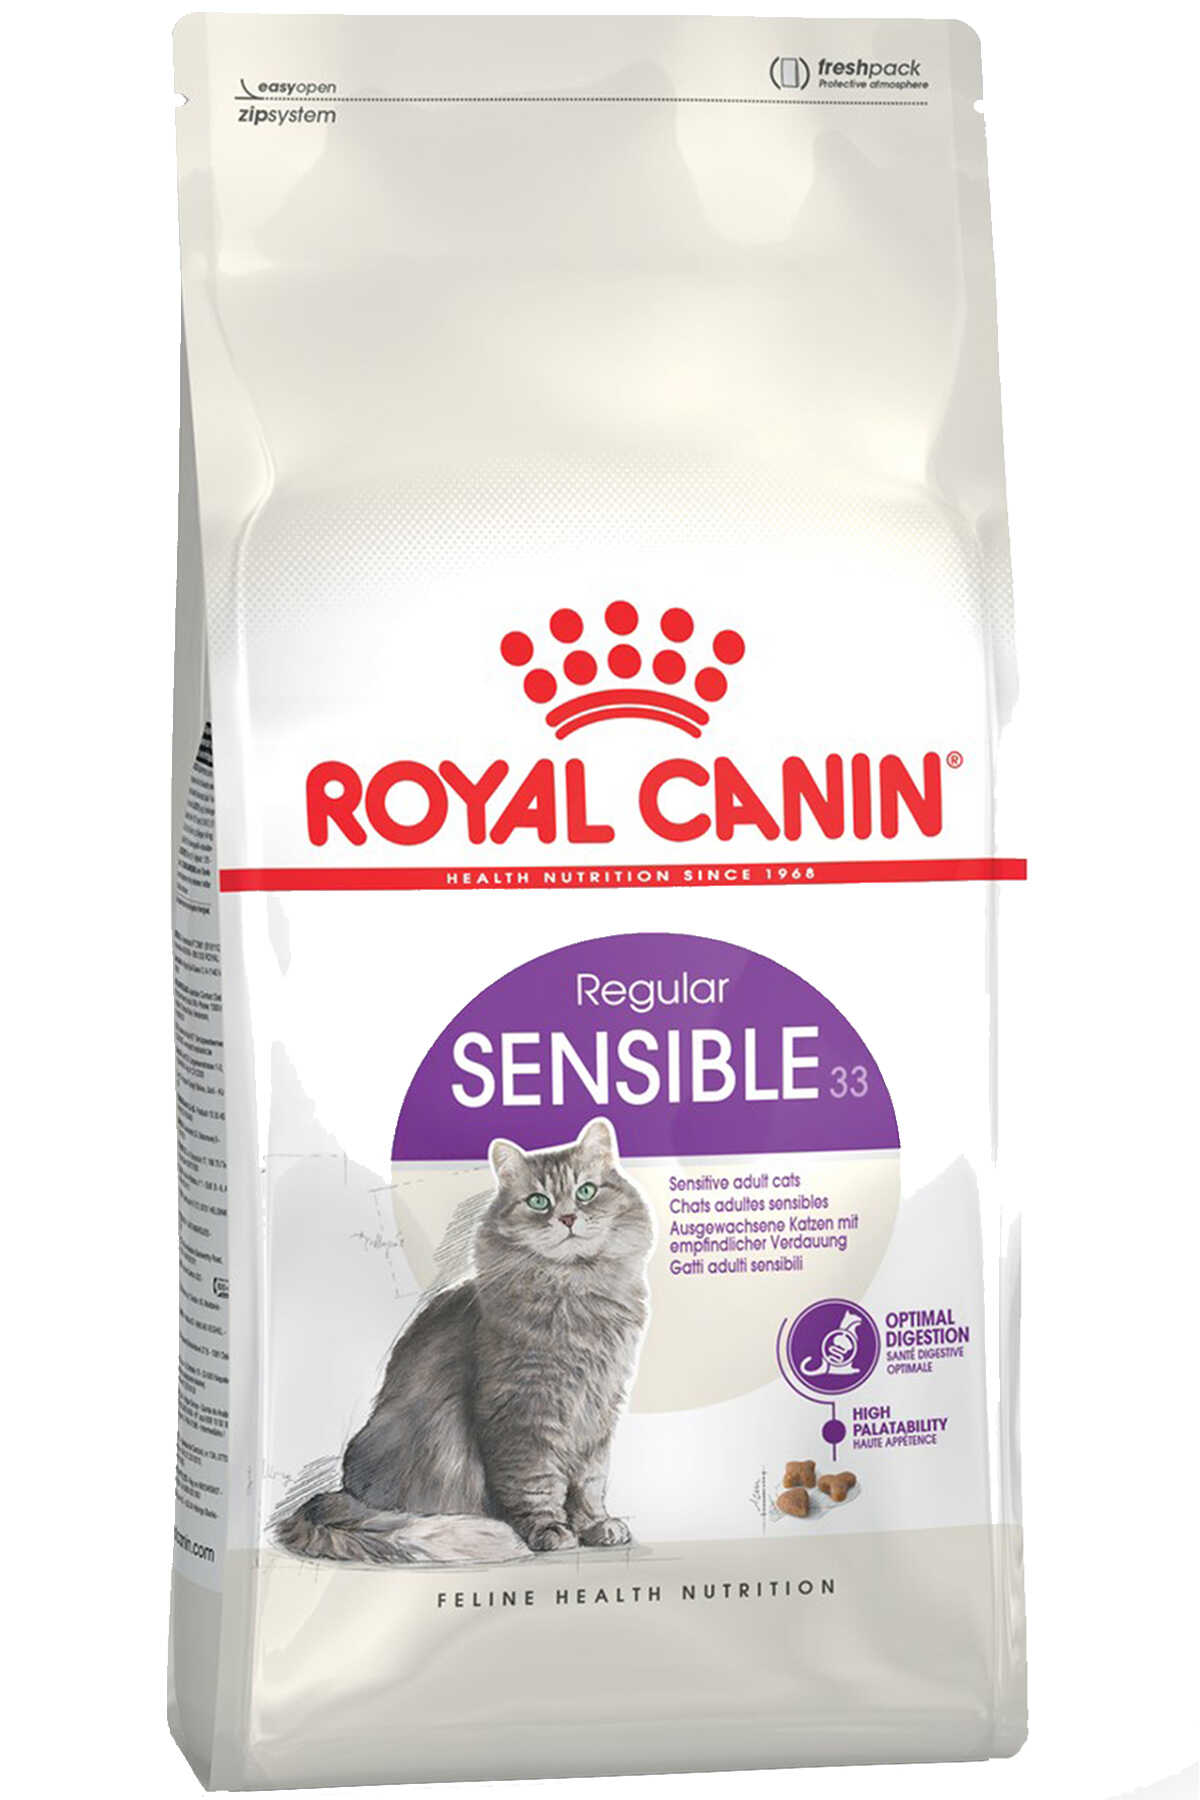 Royal Canin Sensible 33 Hassas Sindirim Sistemi olan Kediler için Yetişkin Kedi Maması 2kg